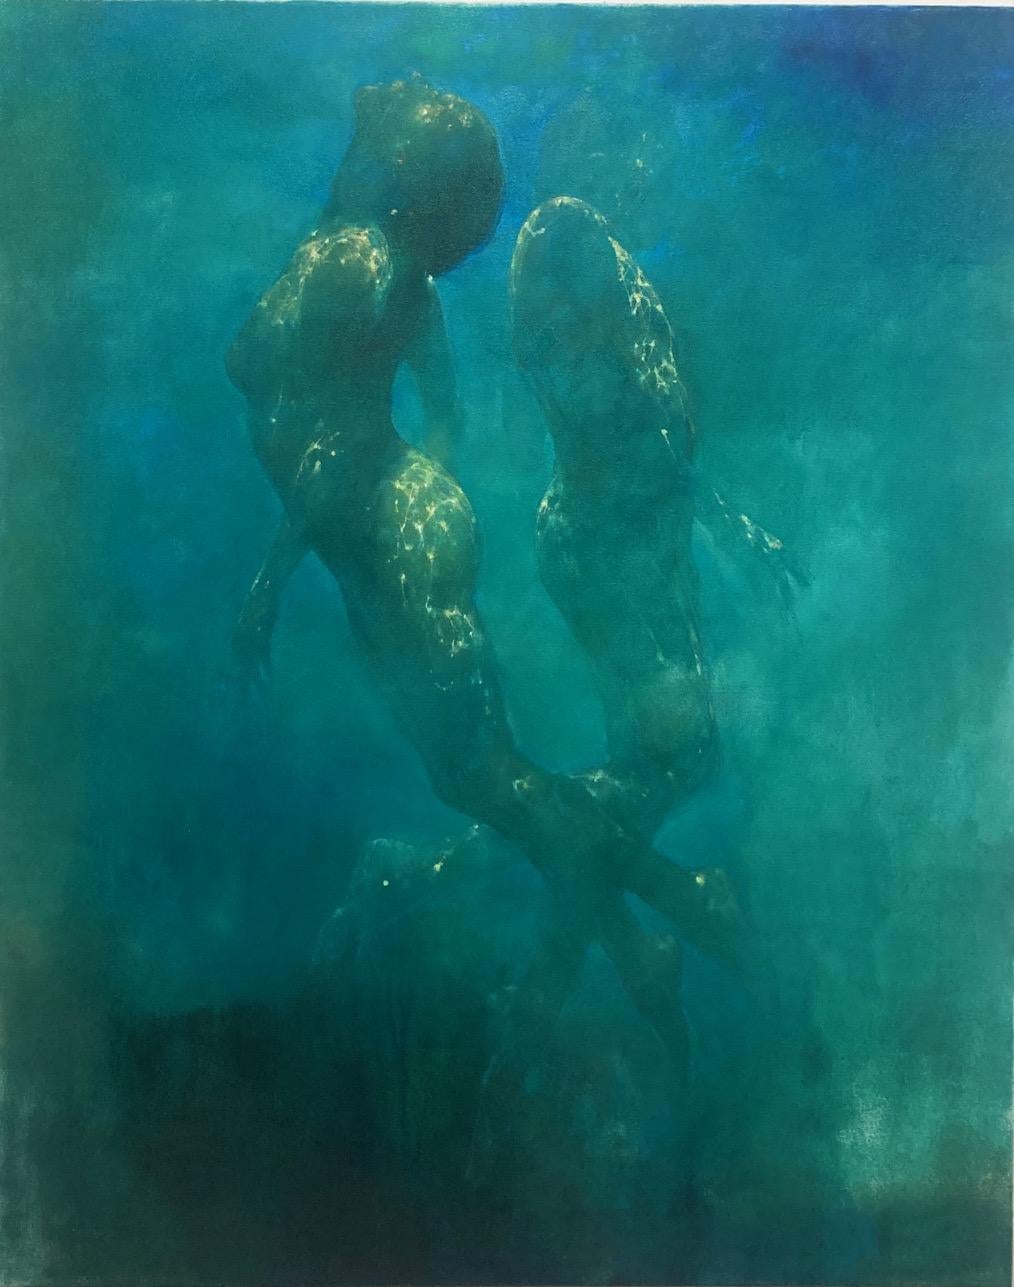  Les murmures d'océan - peinture figurative humaine nue sous-marine - art abstrait